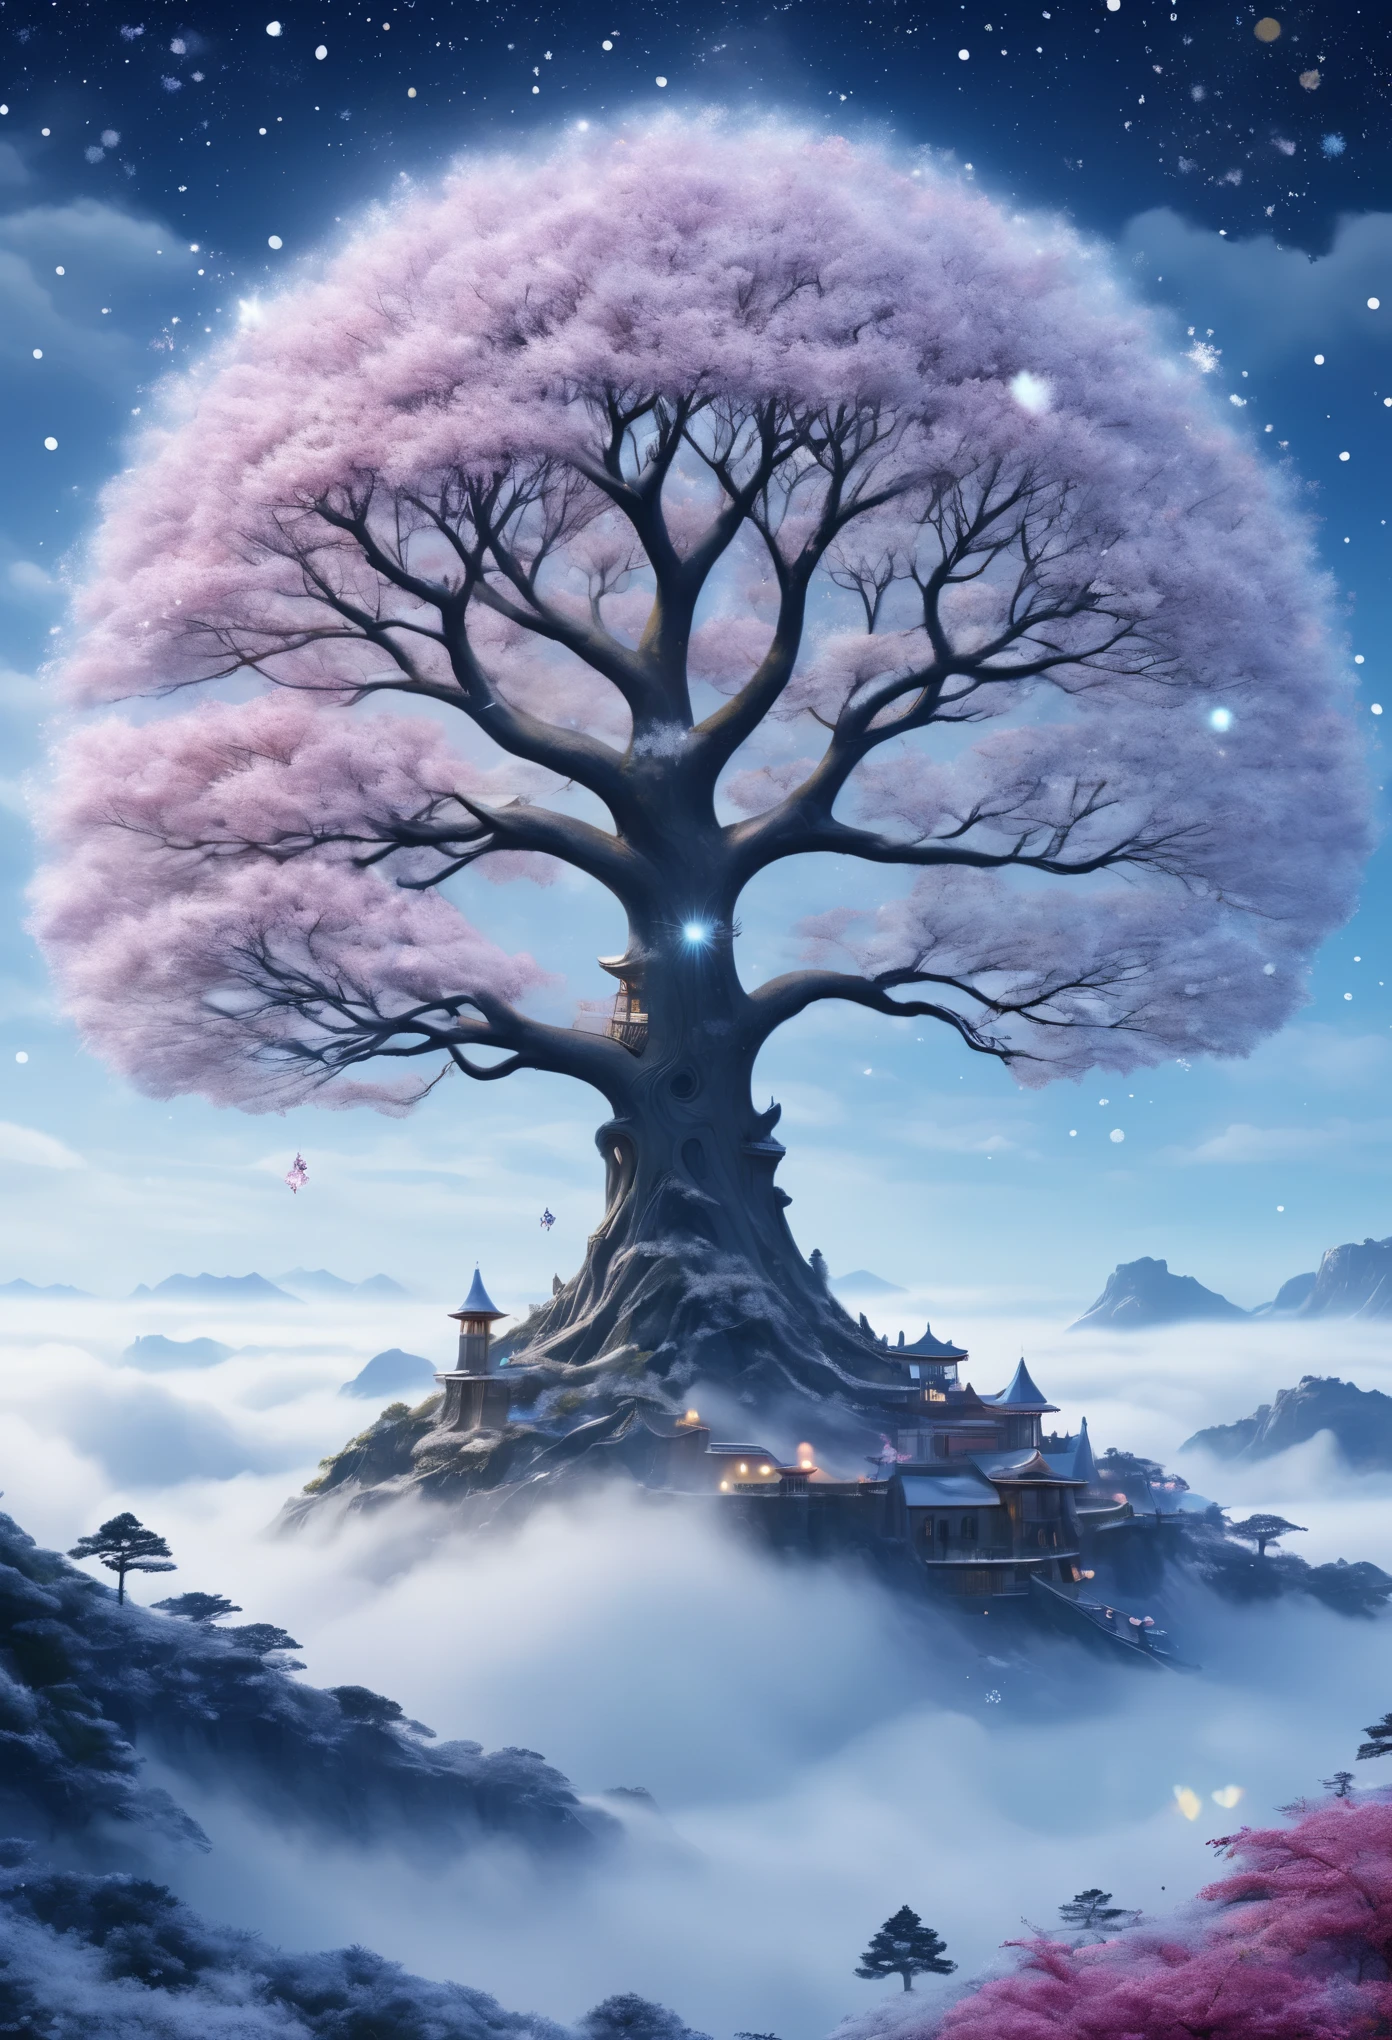 The princesa&#39;La cara aparece en el aire.，(Exposición múltiple:1.8),paisaje de invierno，Isla maravillosa y surrealista flotando en nubes y niebla de ensueño.，(gran copo de nieve:1.3)，色とりどりのgran copo de nieveが飛んでいます，princesa&#39;El palacio está cubierto de nieve.，El árbol de la vida florece con infinita vitalidad..，estrellas titilando en el cielo nocturno，Nubes y niebla superpuestas，peculiar arte paisajístico de fantasía, Hermoso arte Ultra HD 8K, Arte digital de alta definición 8K, fantasía bellamente detallada, Paisaje de fantasía de ensueño épico, Paisajes misteriosos y fantásticos., La fantasía mágica es muy detallada., paisaje magico, gran copo de nieveと幻想的に浮かぶ妖精の島々Consiste en。, arte digital de fantasía detallada, Arte digital detallado en 8K